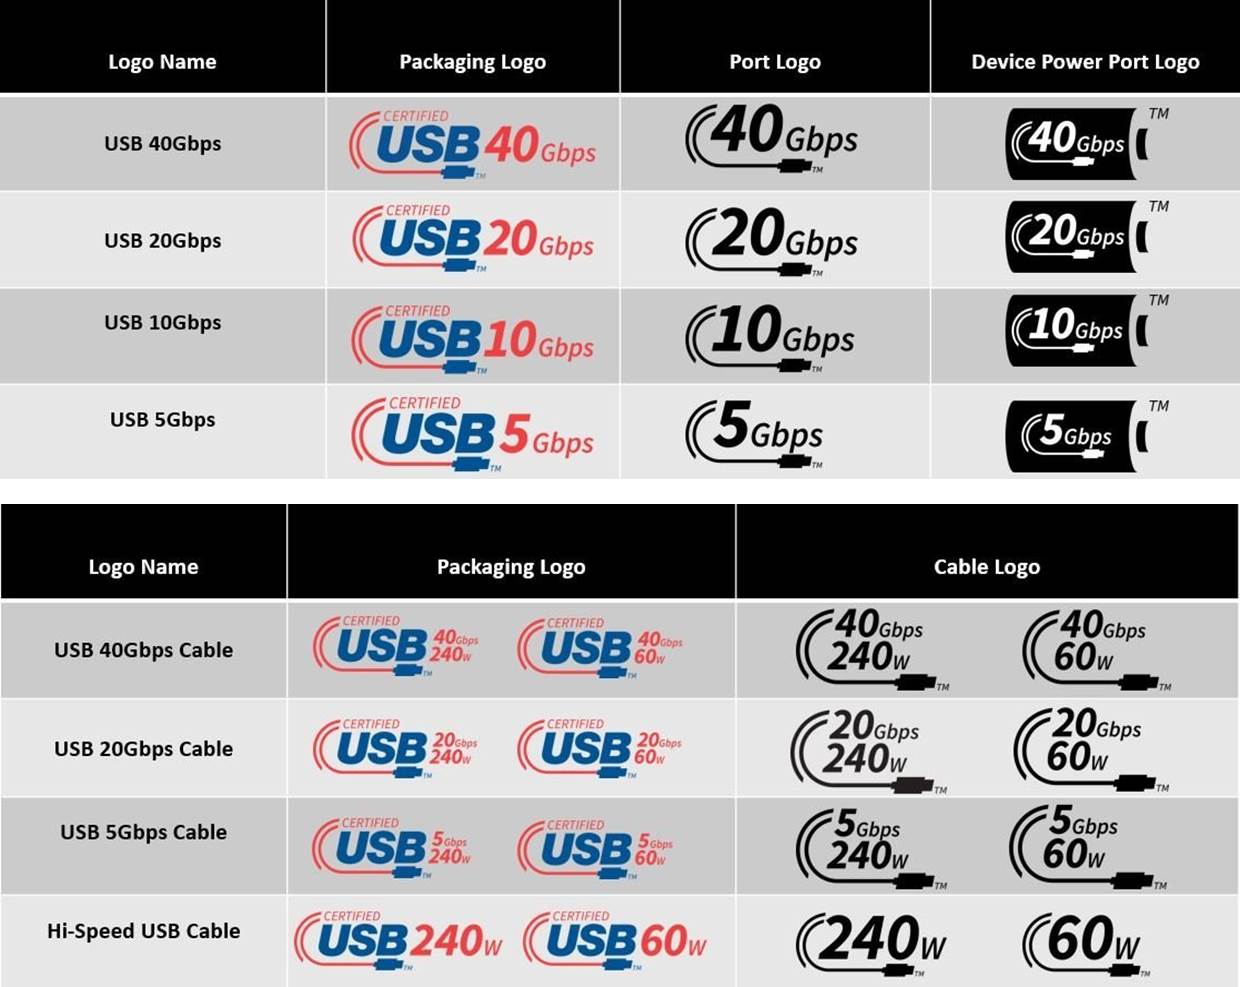 USB 4.0 y Thunderbolt 4: diferencias y similitudes entre las dos conexiones  más actuales